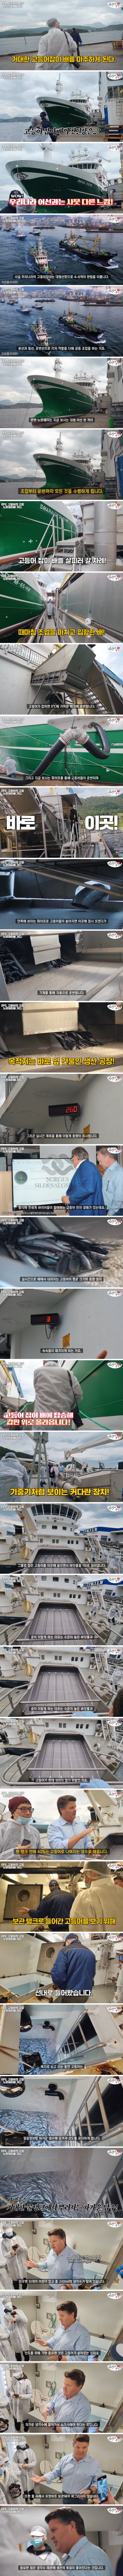 한국으로 수출되는 노르웨이산 고등어의 위엄 ㄷㄷ